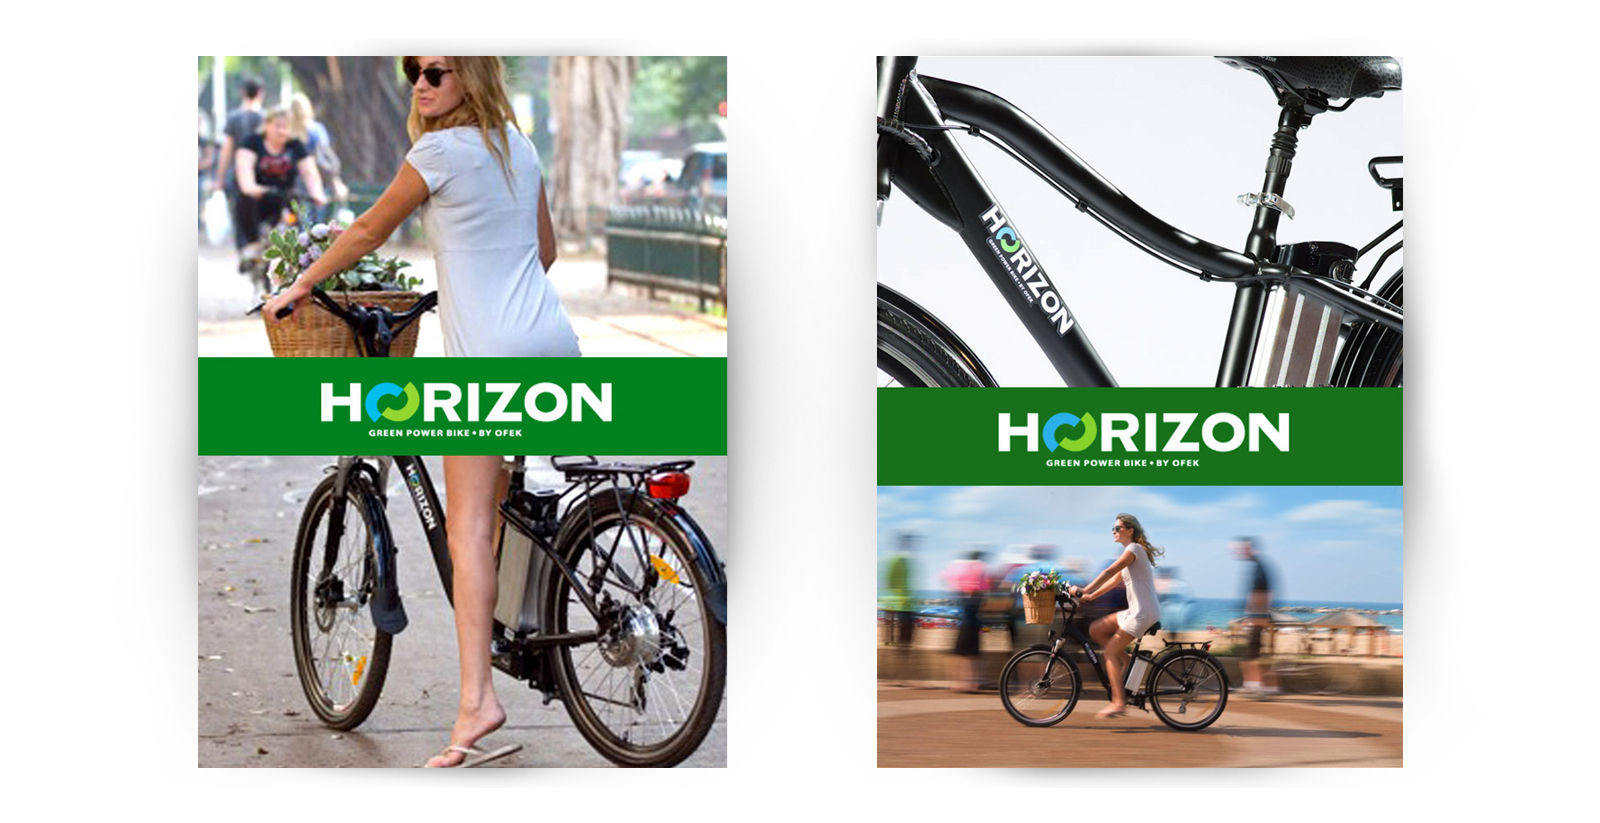 - HORIZON – צילומי קמפיין למותג האופניים החשמליות, מהראשונים בארץ. הצילום התקיים בסטודיו וברחובות תל אביב.